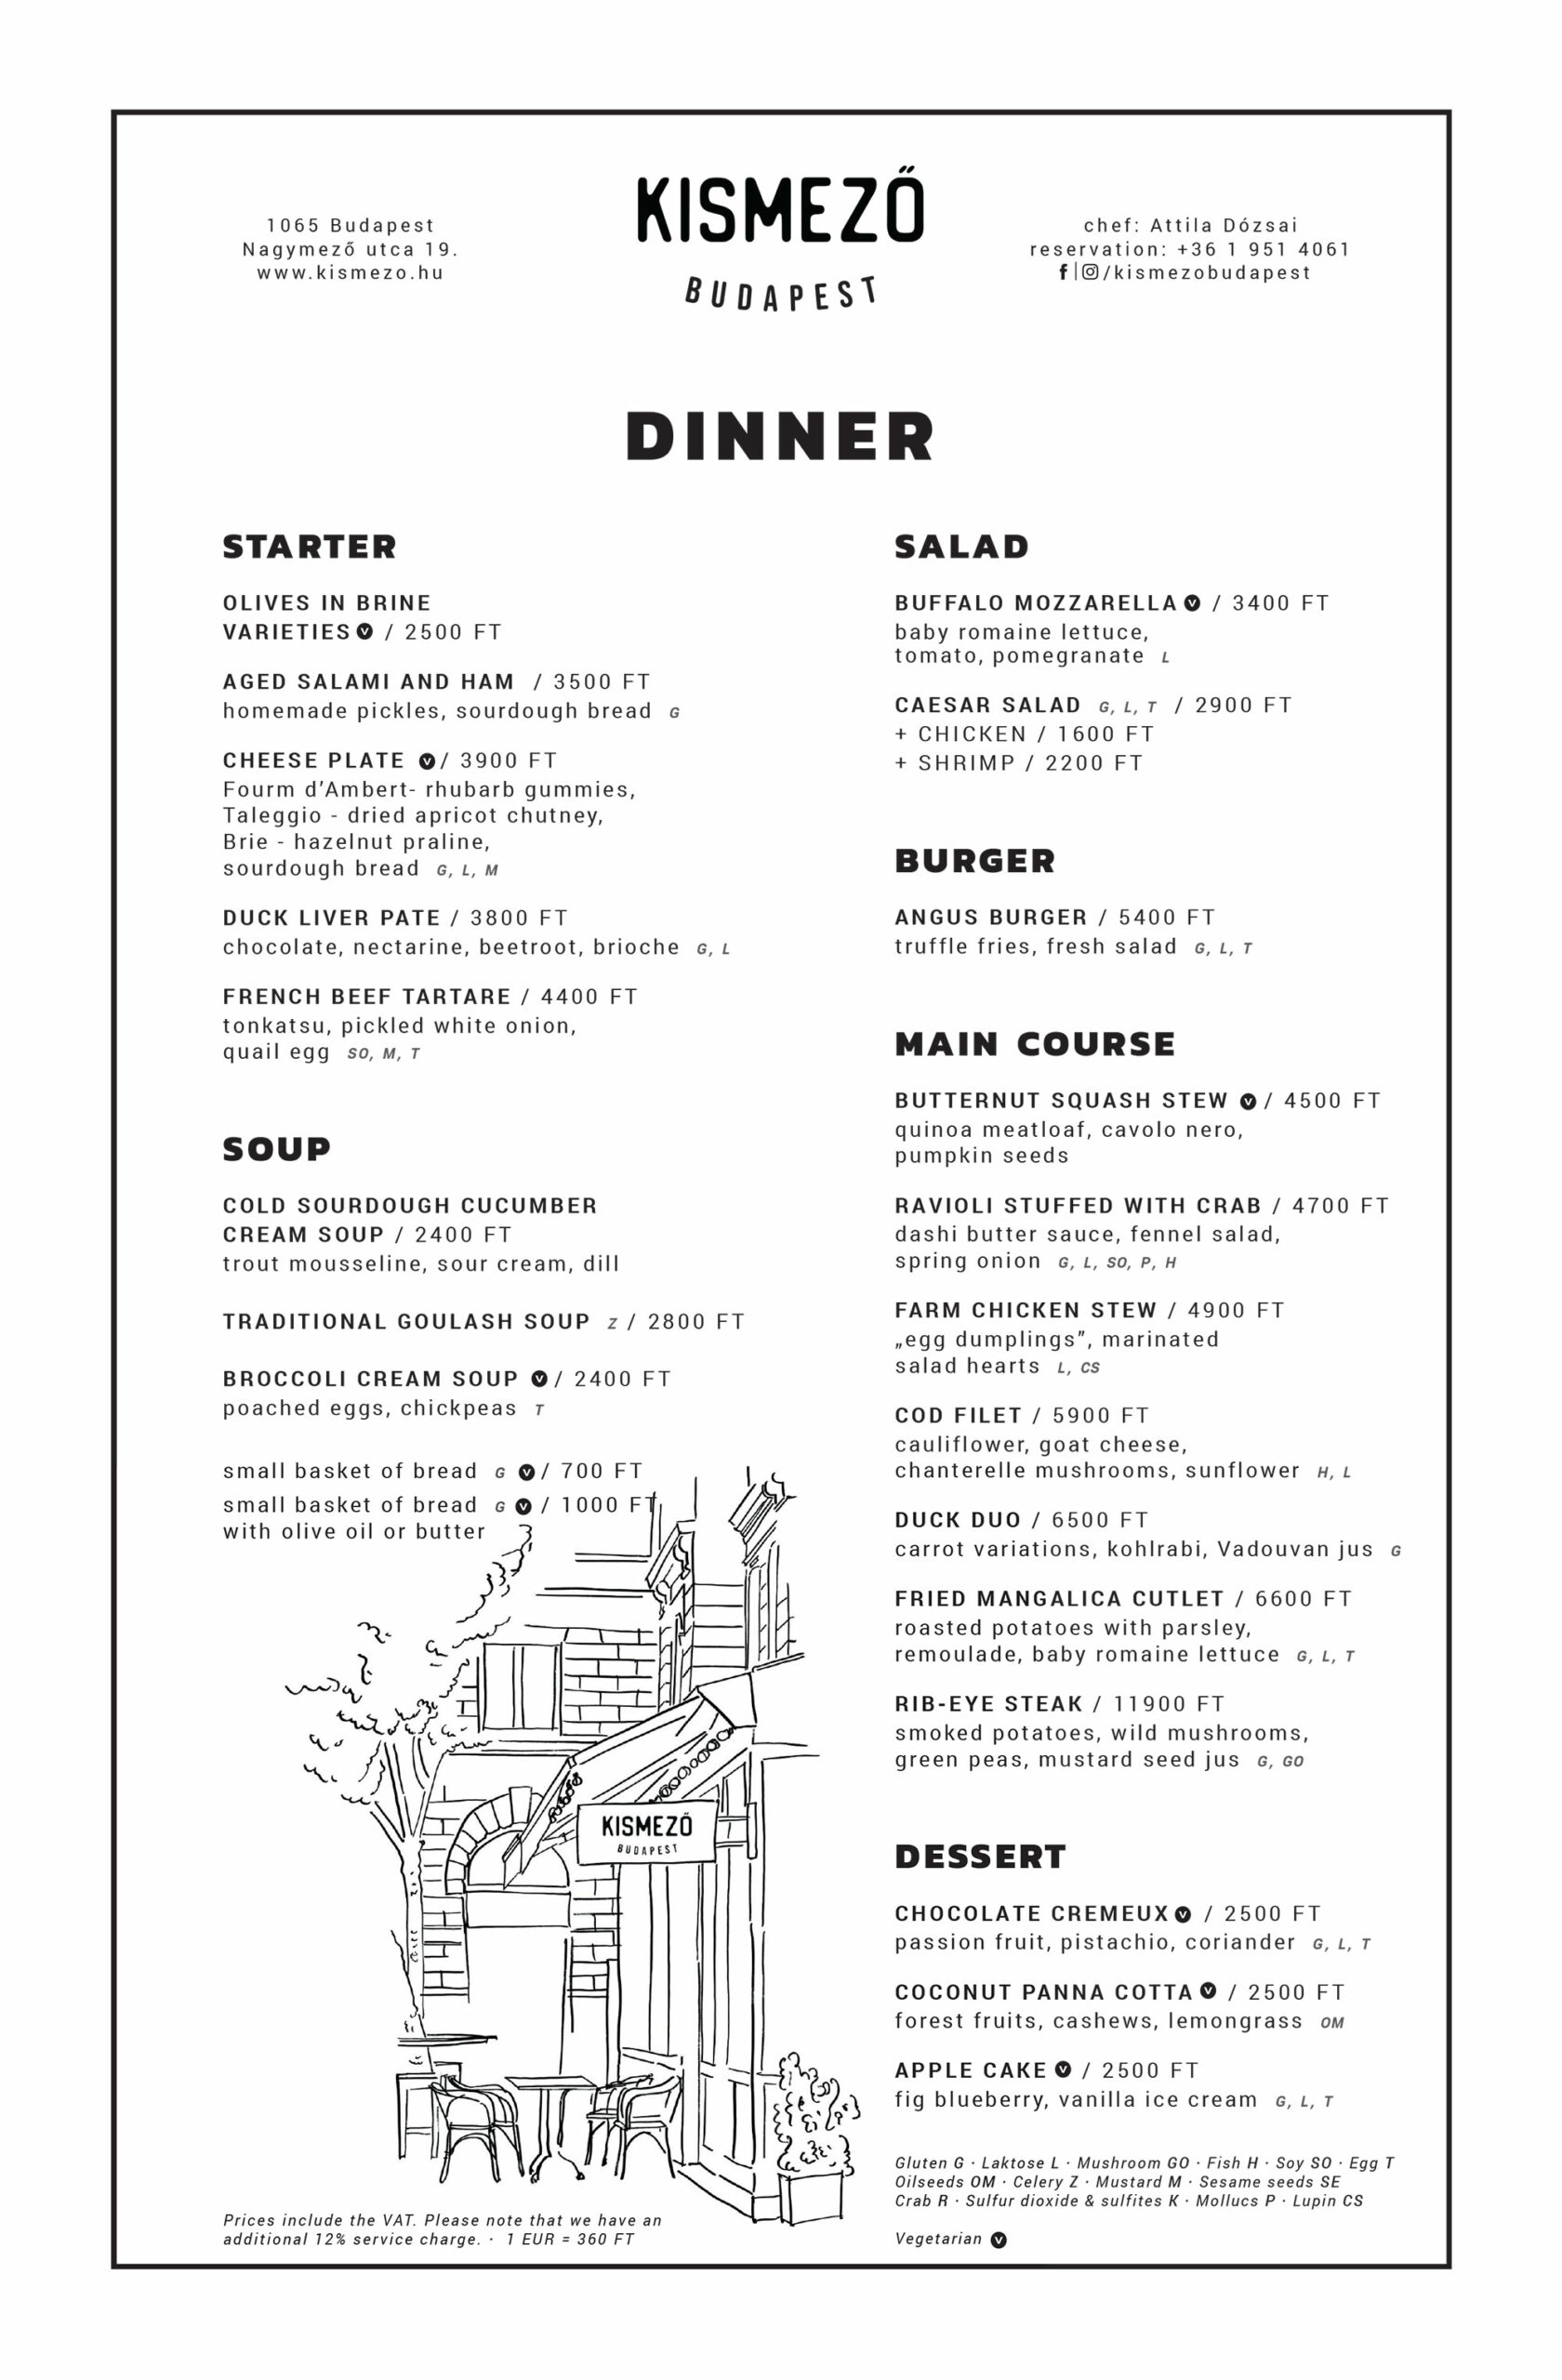 Kismező Dinner menu